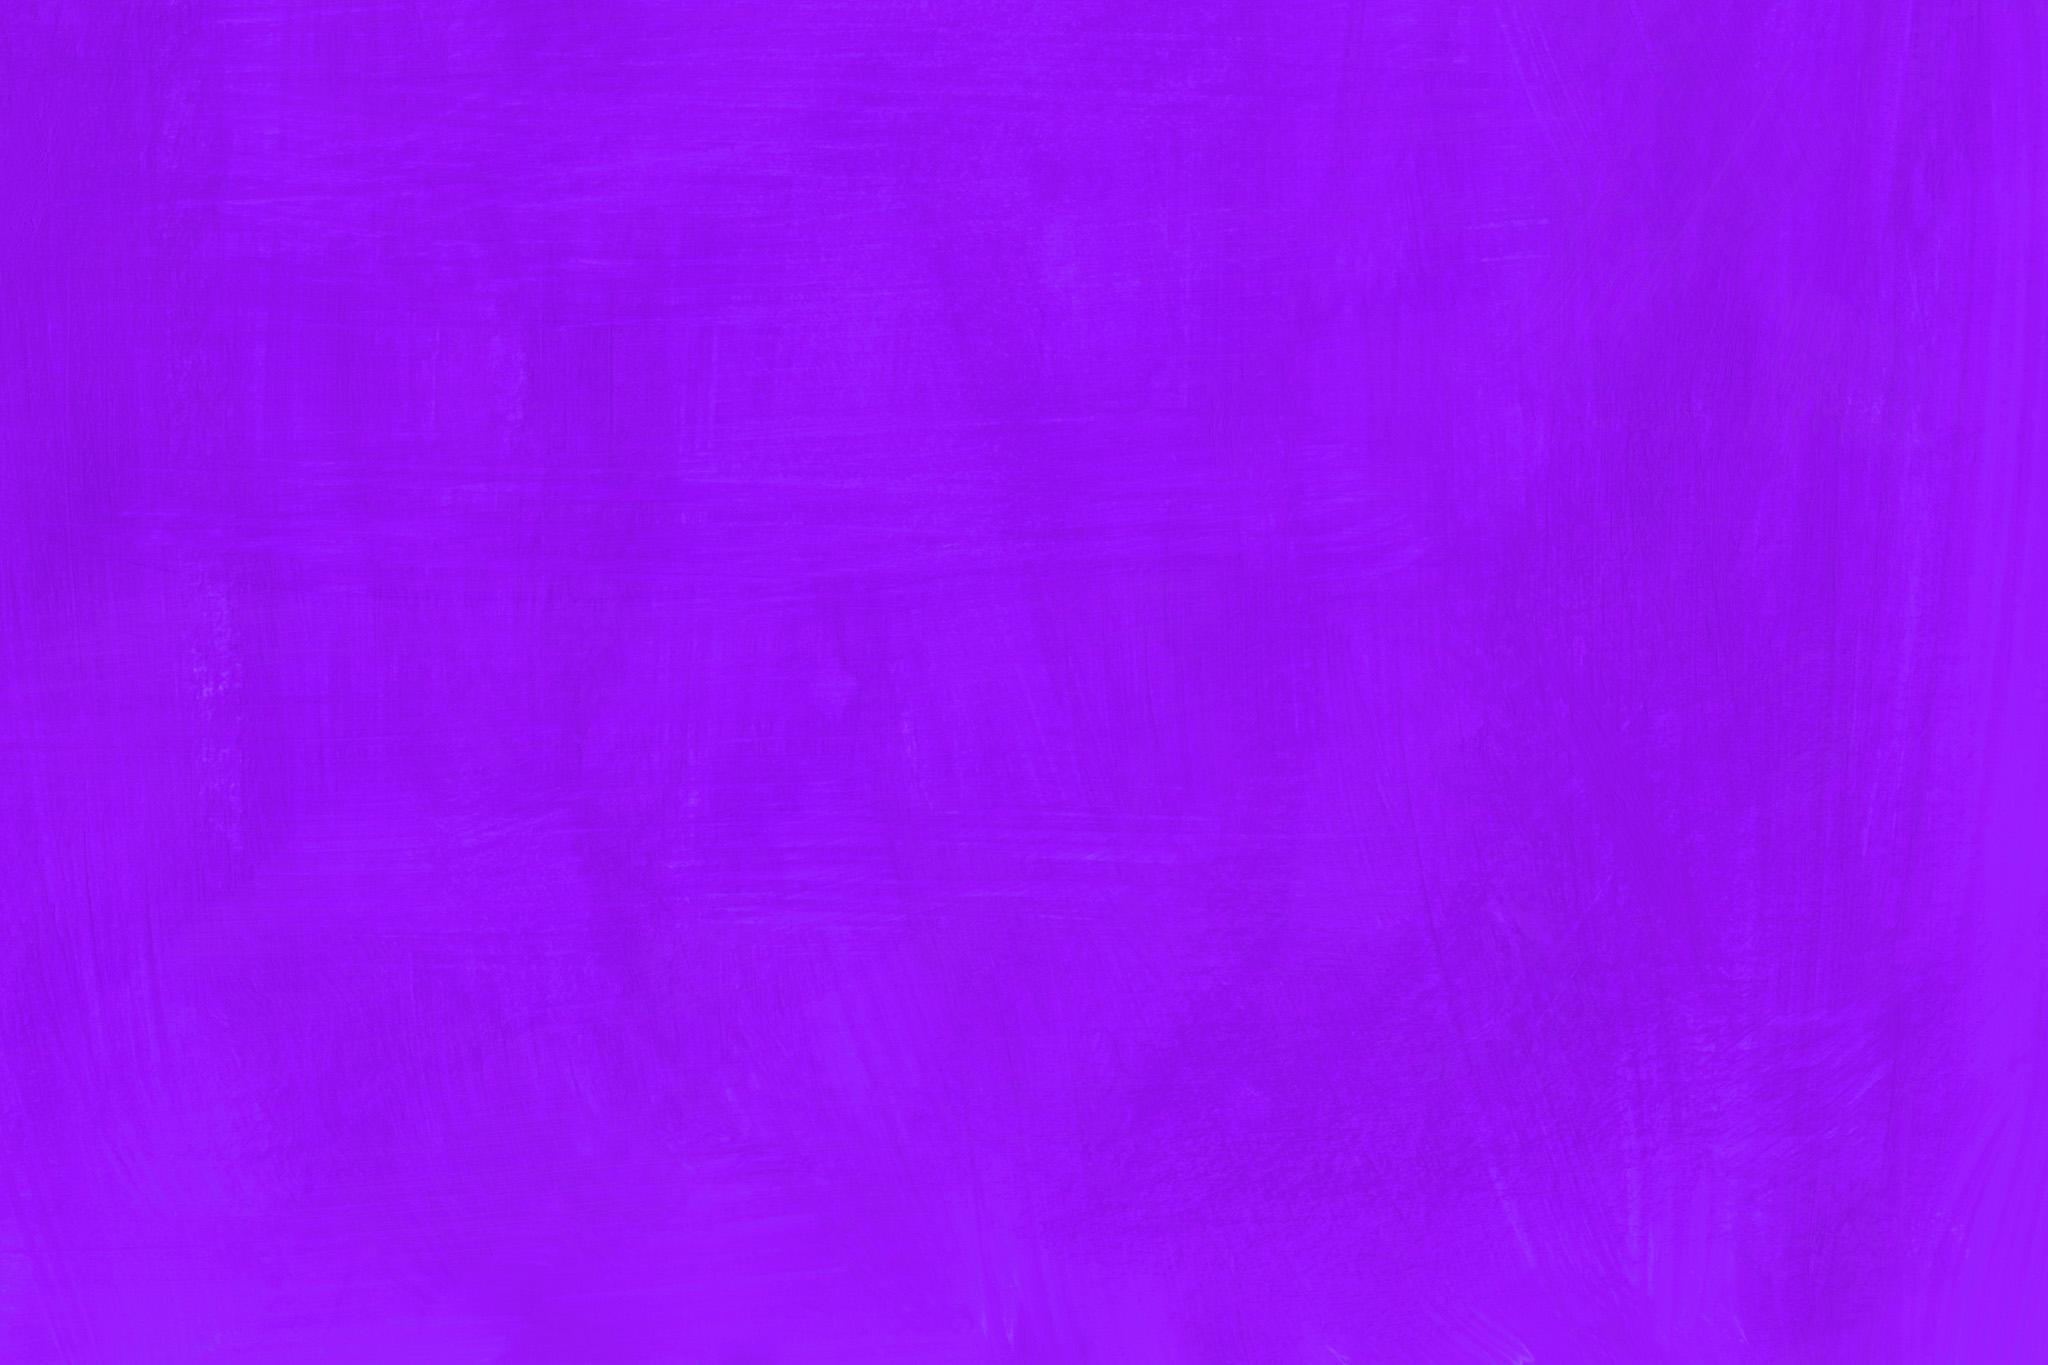 無地の紫のかっこいい壁紙 の画像素材を無料ダウンロード 1 フリー素材 Beiz Images